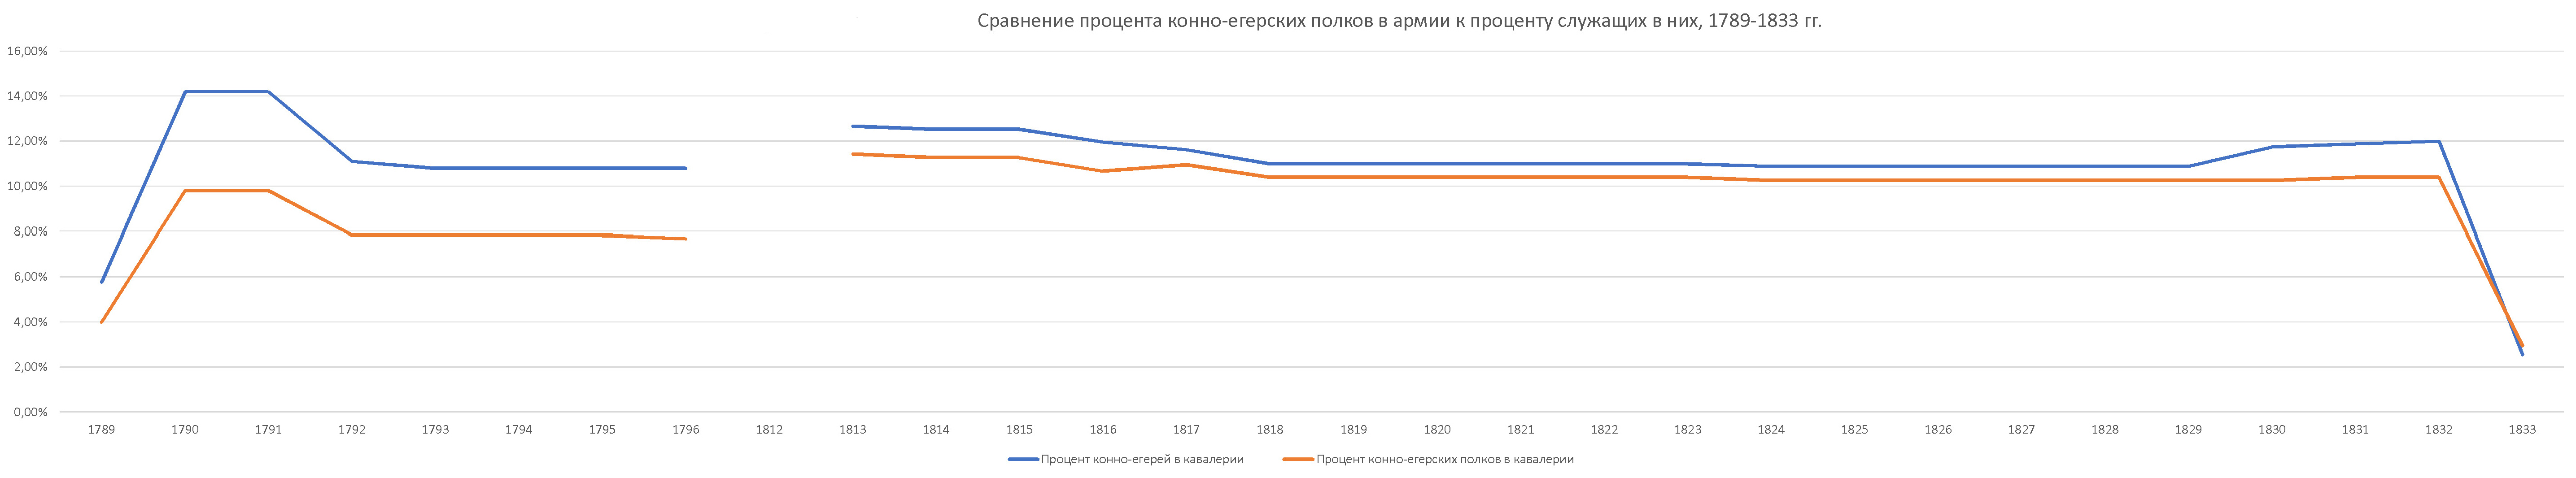 Сравнение процента конно-егерских полков в армии к проценту служащих в них русской армии 